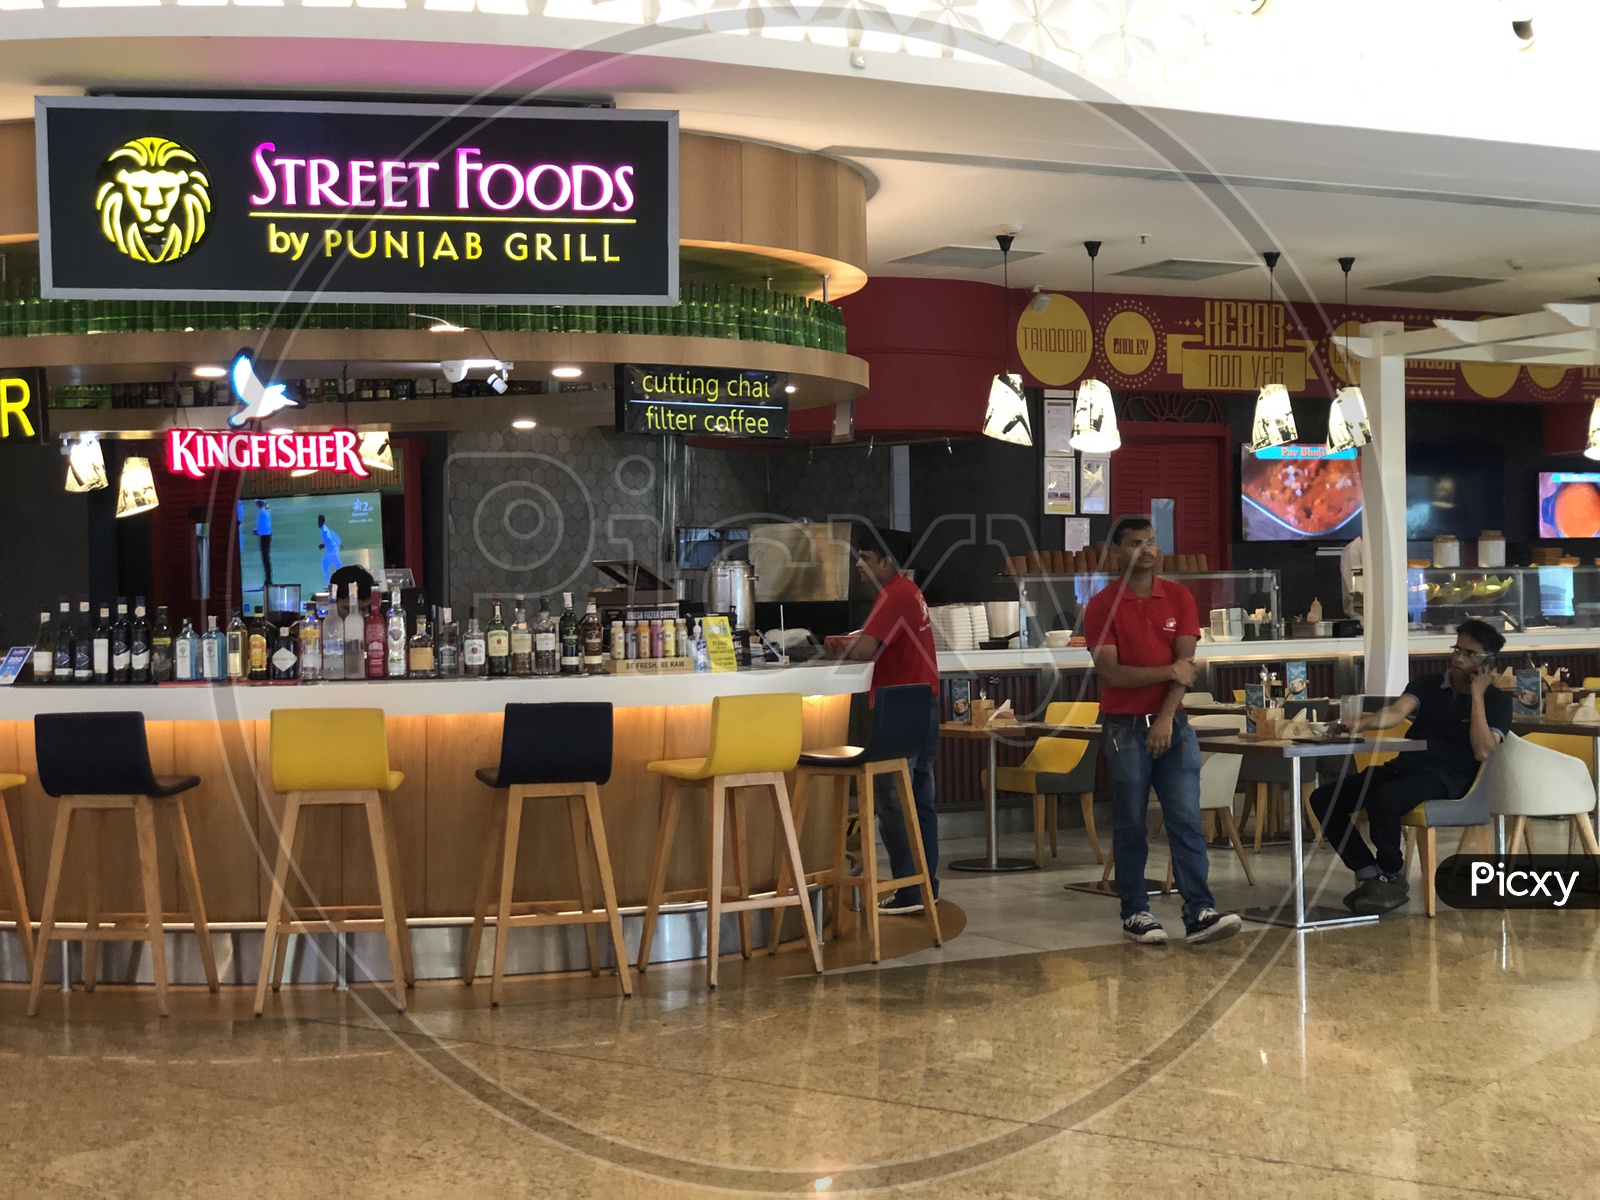 Street Foods A Punjabi Grill Food Store At Terminal 2 Of Mumbai Airport